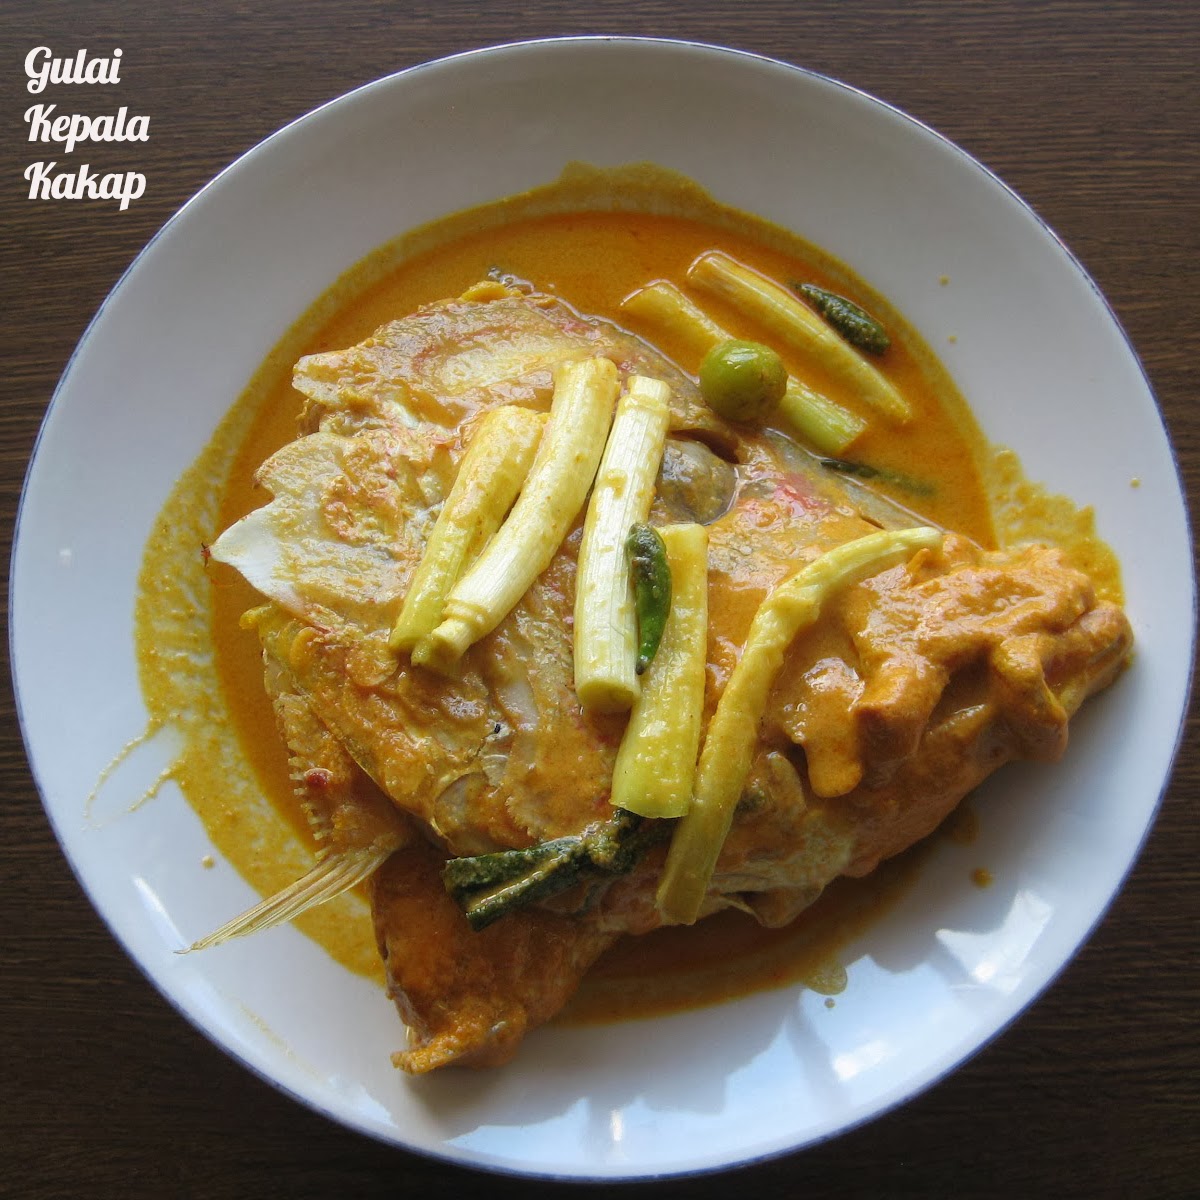 Resep Masakan Praktis Rumahan Indonesia Sederhana Gulai Kepala Kakap